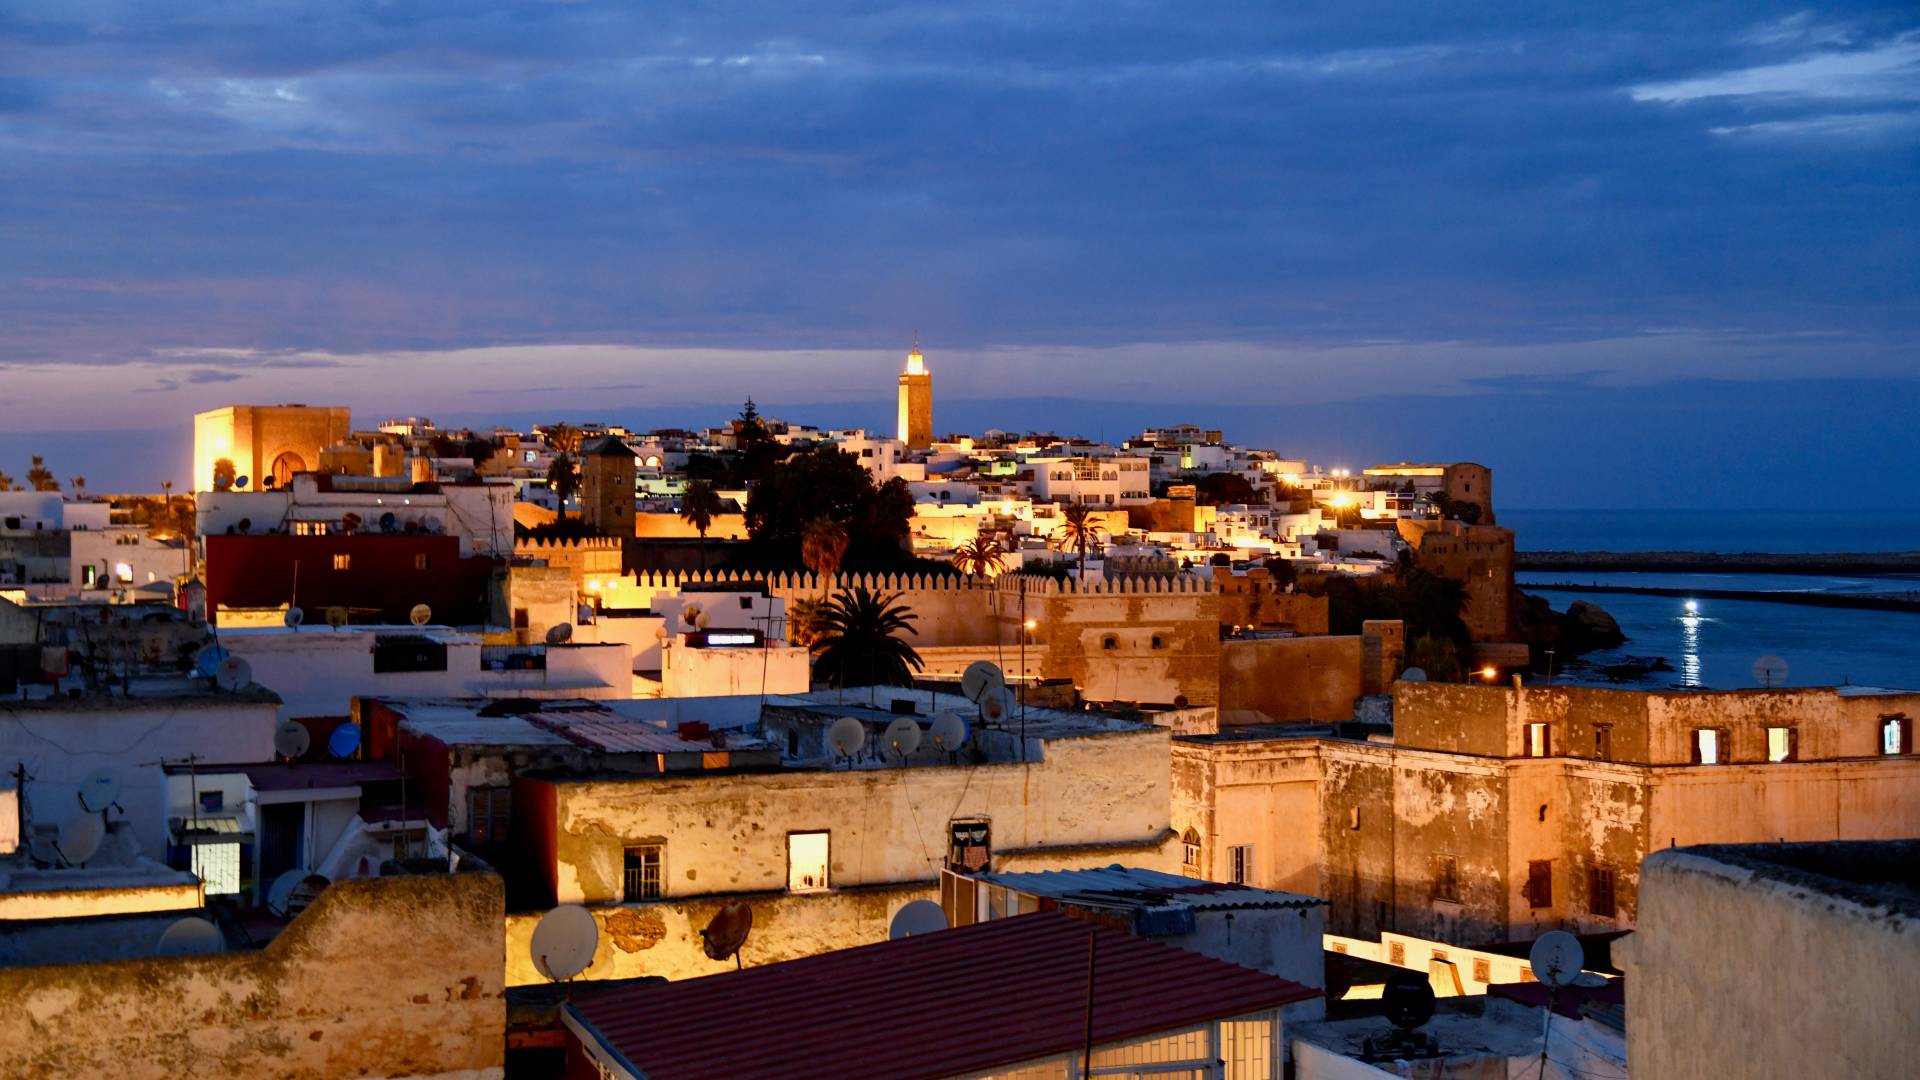 Night view of rooftops in Rabat